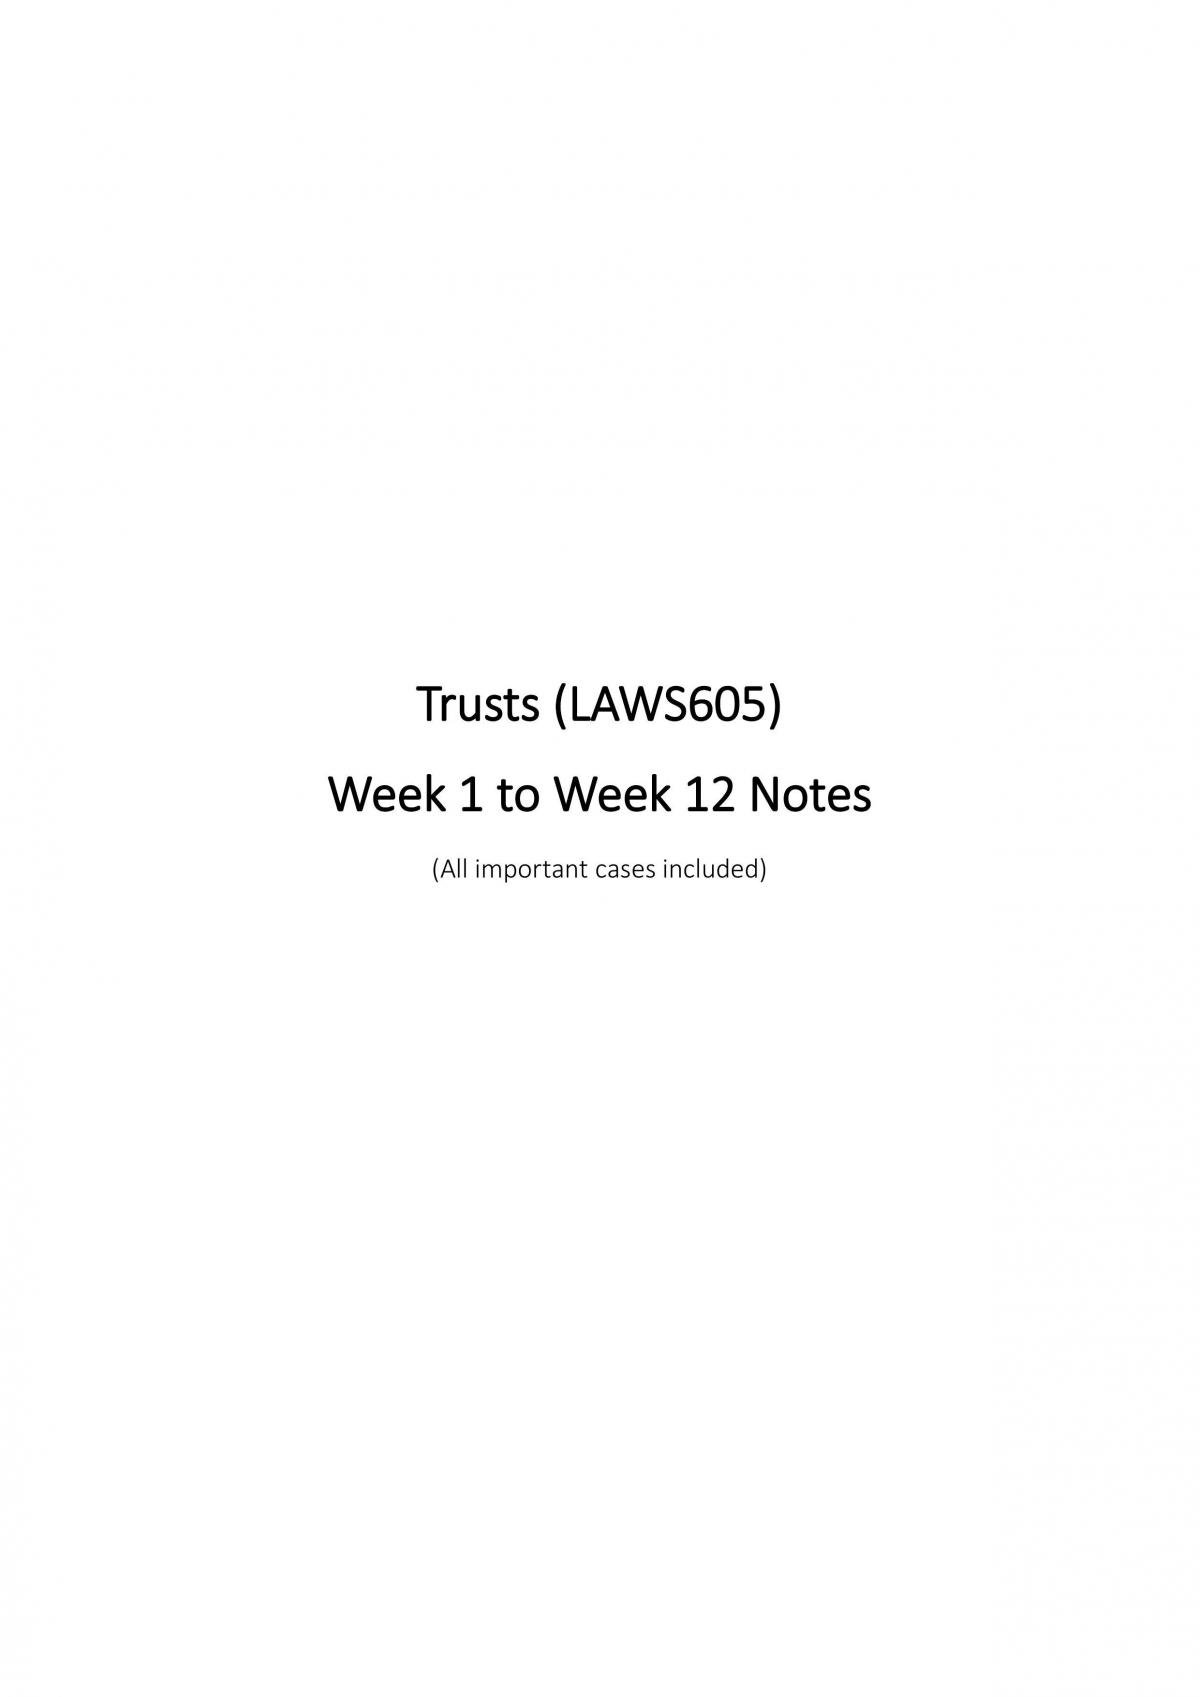 Trusts Week 1 to Week 12 - Page 1